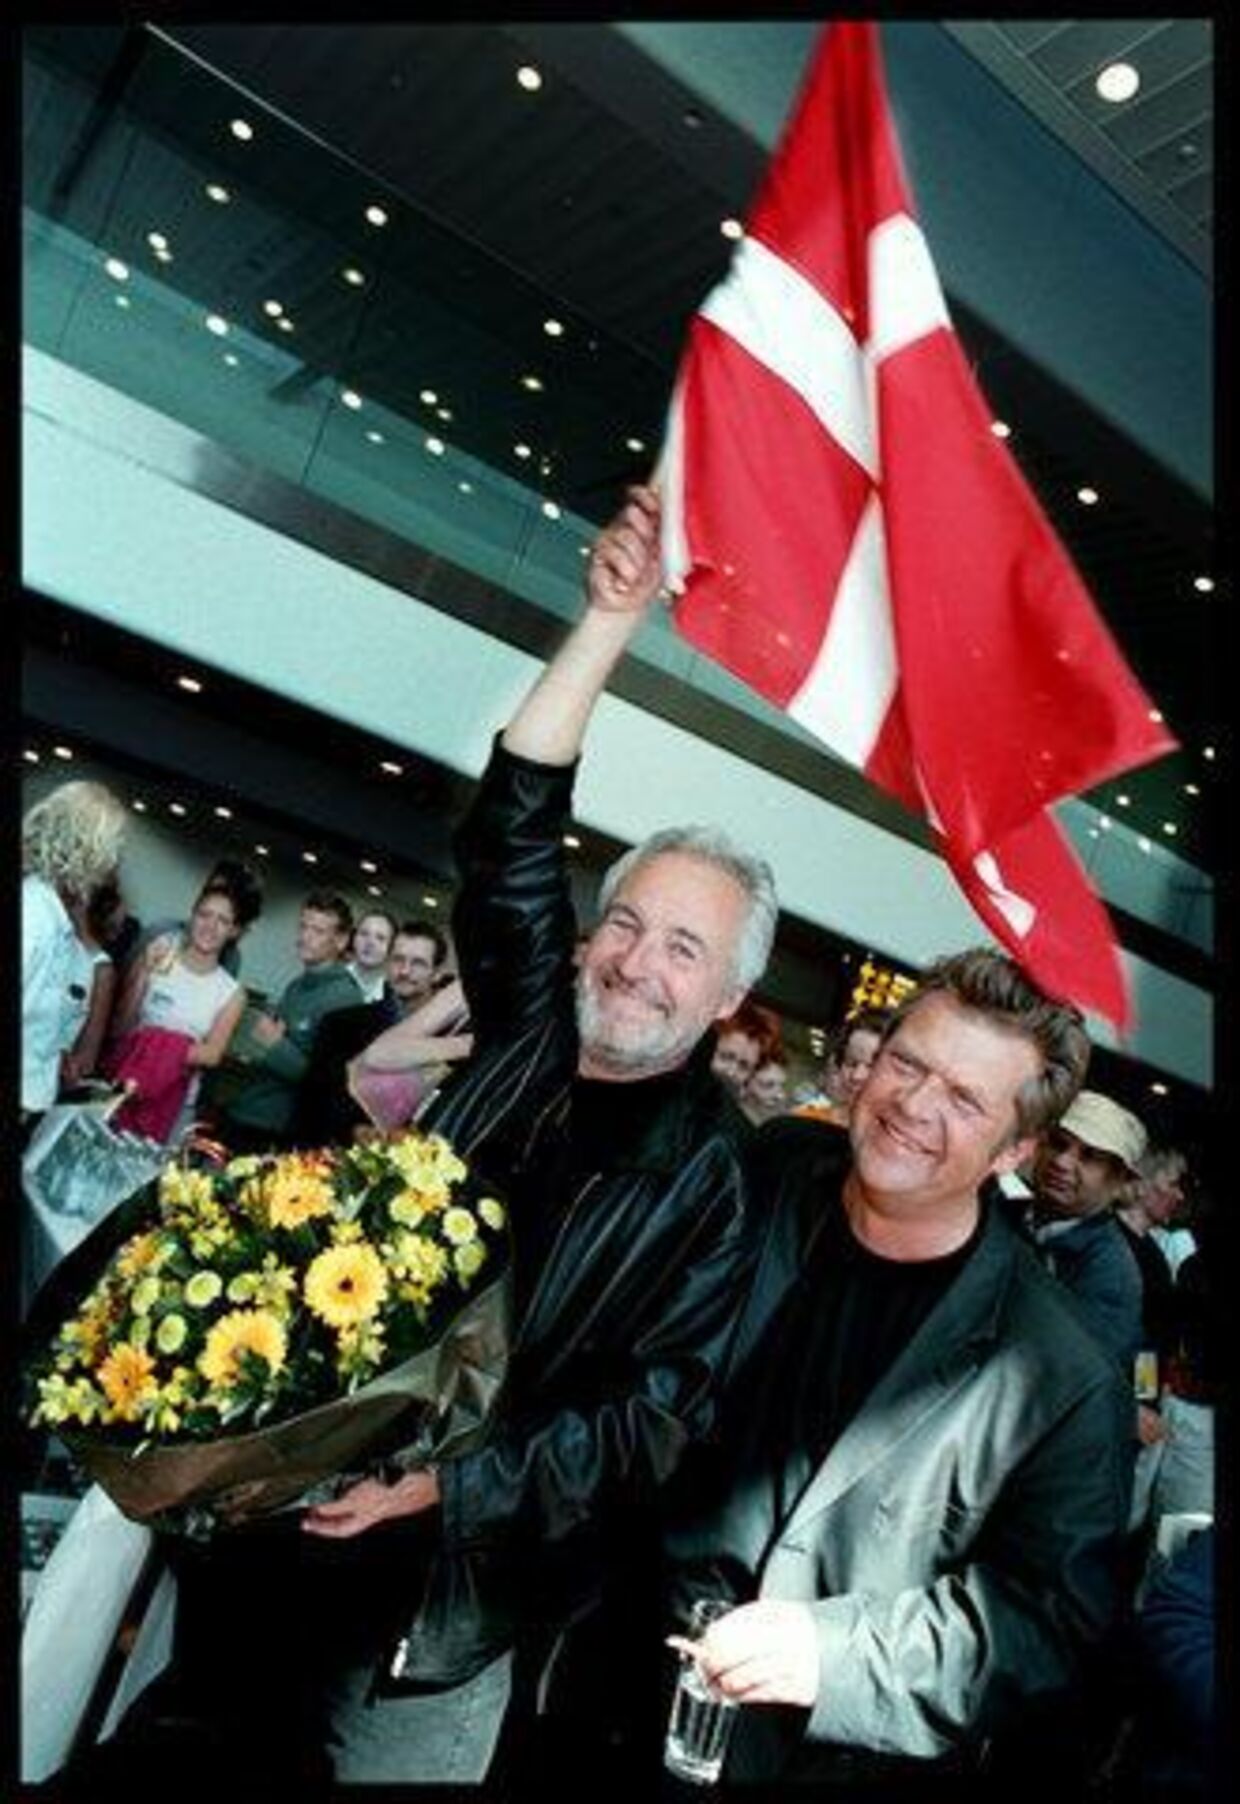 Den populære duo kan synge hele vejen til banken. På et år har de tjent mindst 30 mio. kr. efter Grand Prix-sejren i Stockholm. Foto: Linda Henriksen.